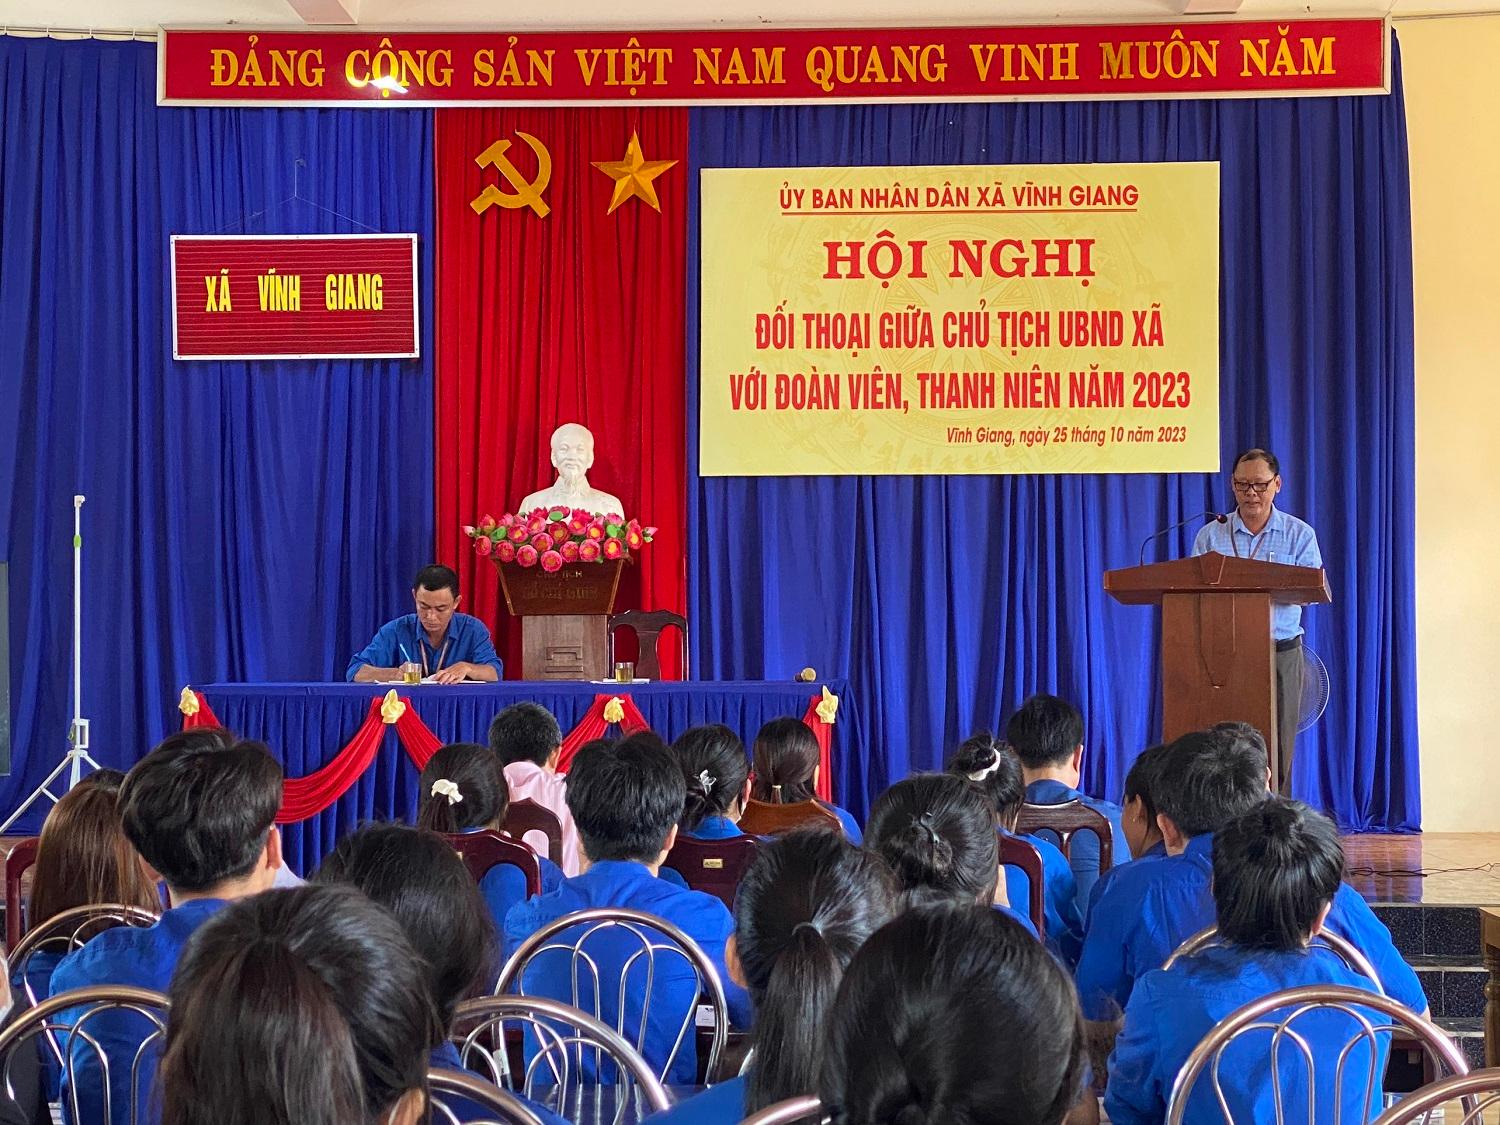 Chủ tịch UBND xã Vĩnh Giang đối thoại với đoàn viên, thanh niên năm 2023